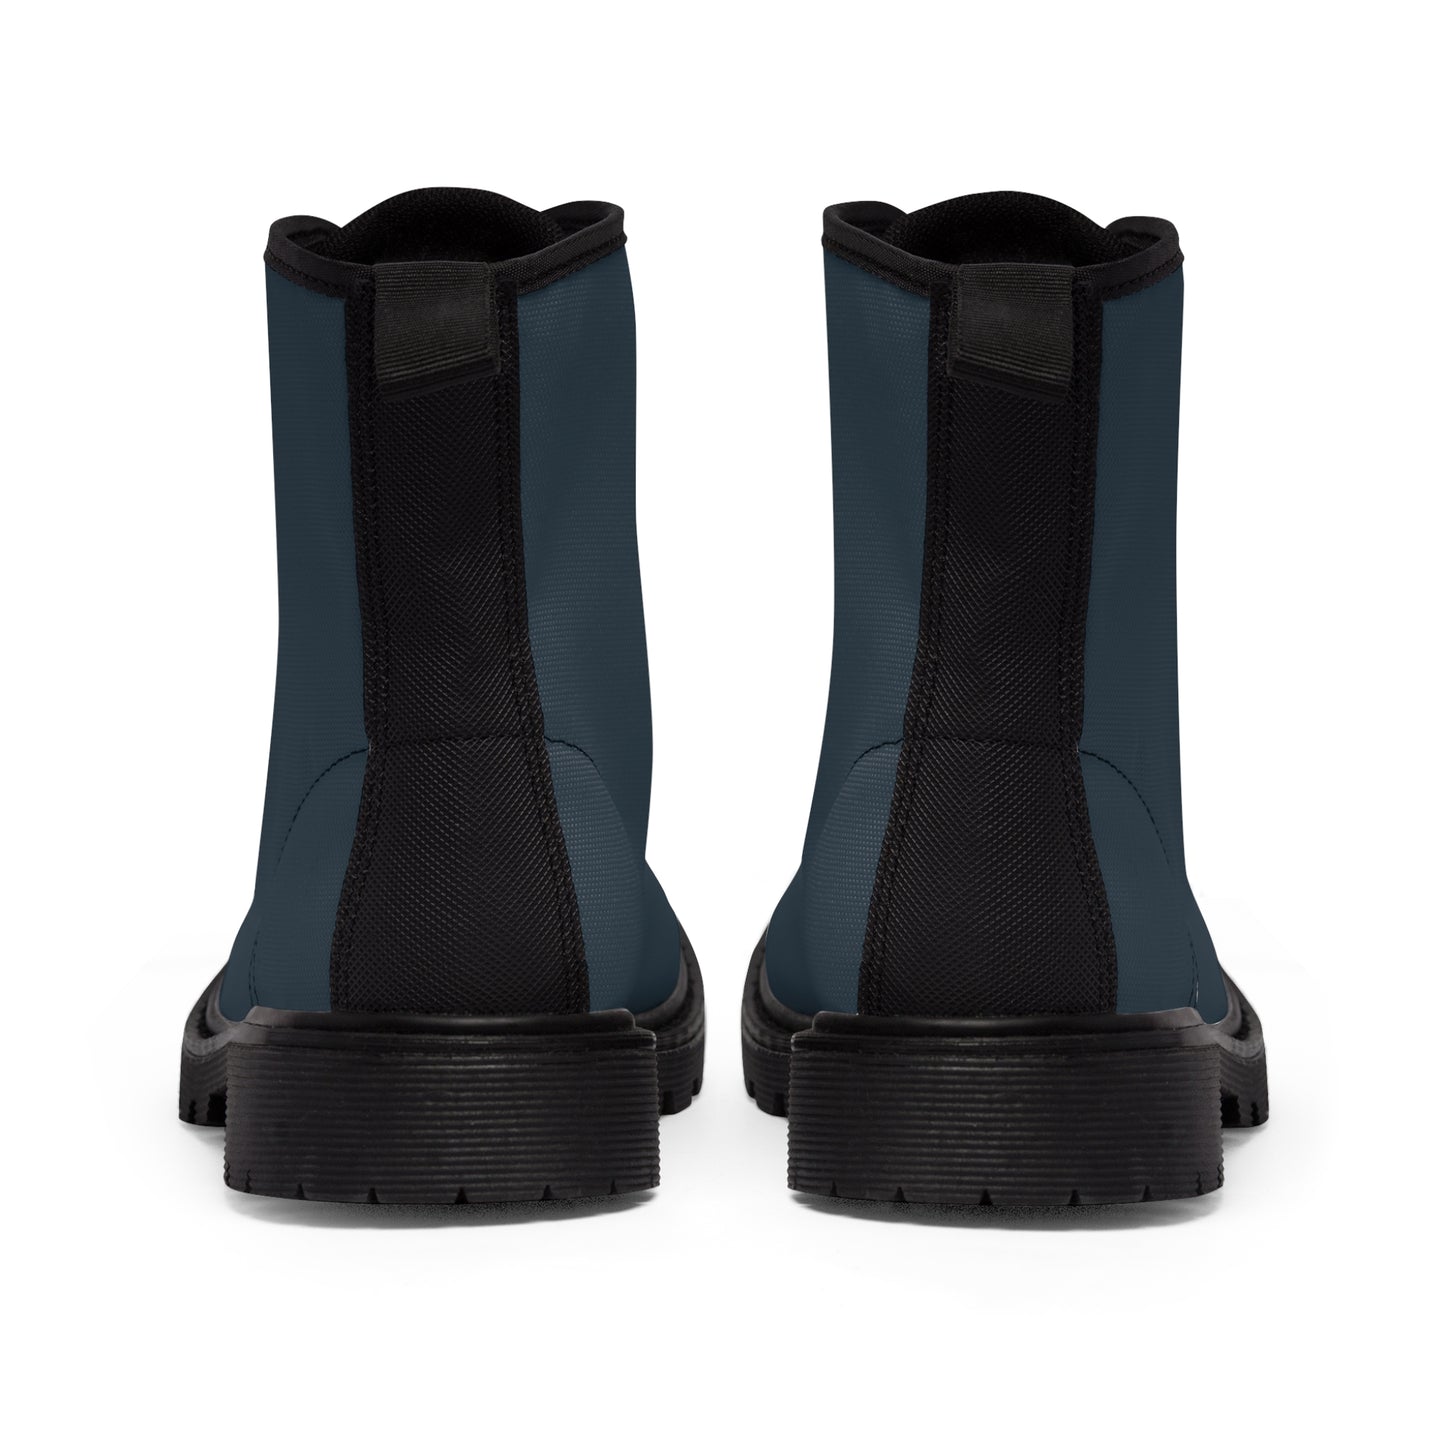 Men's Canvas Boots - Thundercloud Gray US 10.5 Black sole